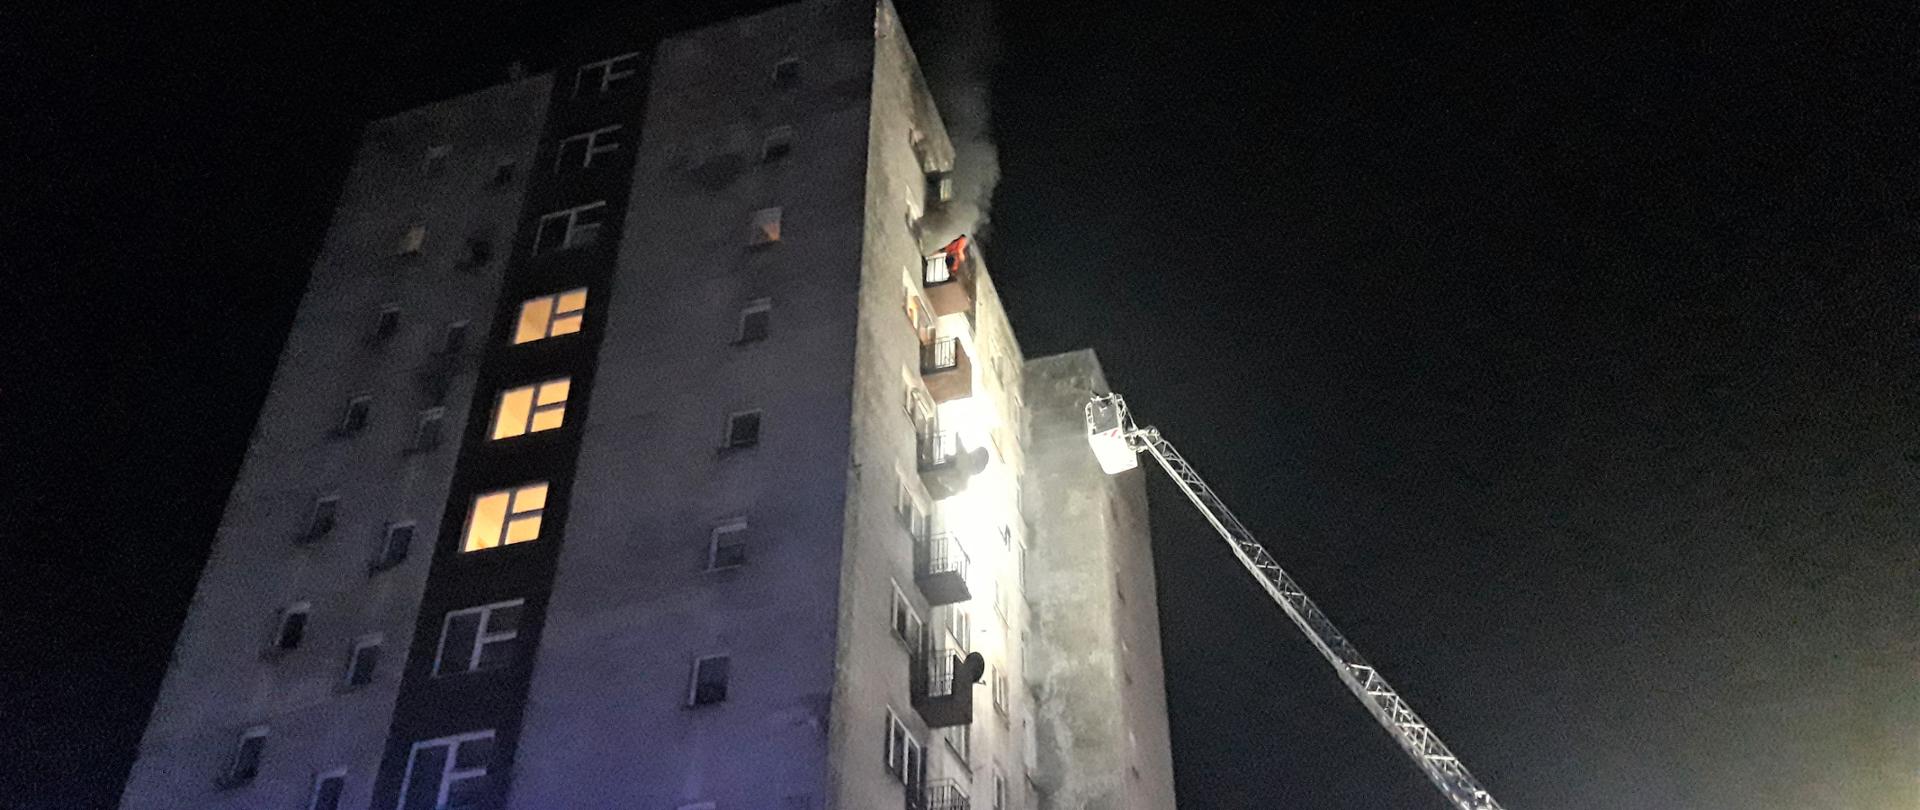 Fotografia przedstawia budynek wielorodzinny gdzie wybuchł pożar. Dym wydobywa się z okna balkonowego na zewnątrz, na balkonie stoi człowiek czekający na pomoc. Do ściany budynku zbliża się kosz drabiny mechanicznej.